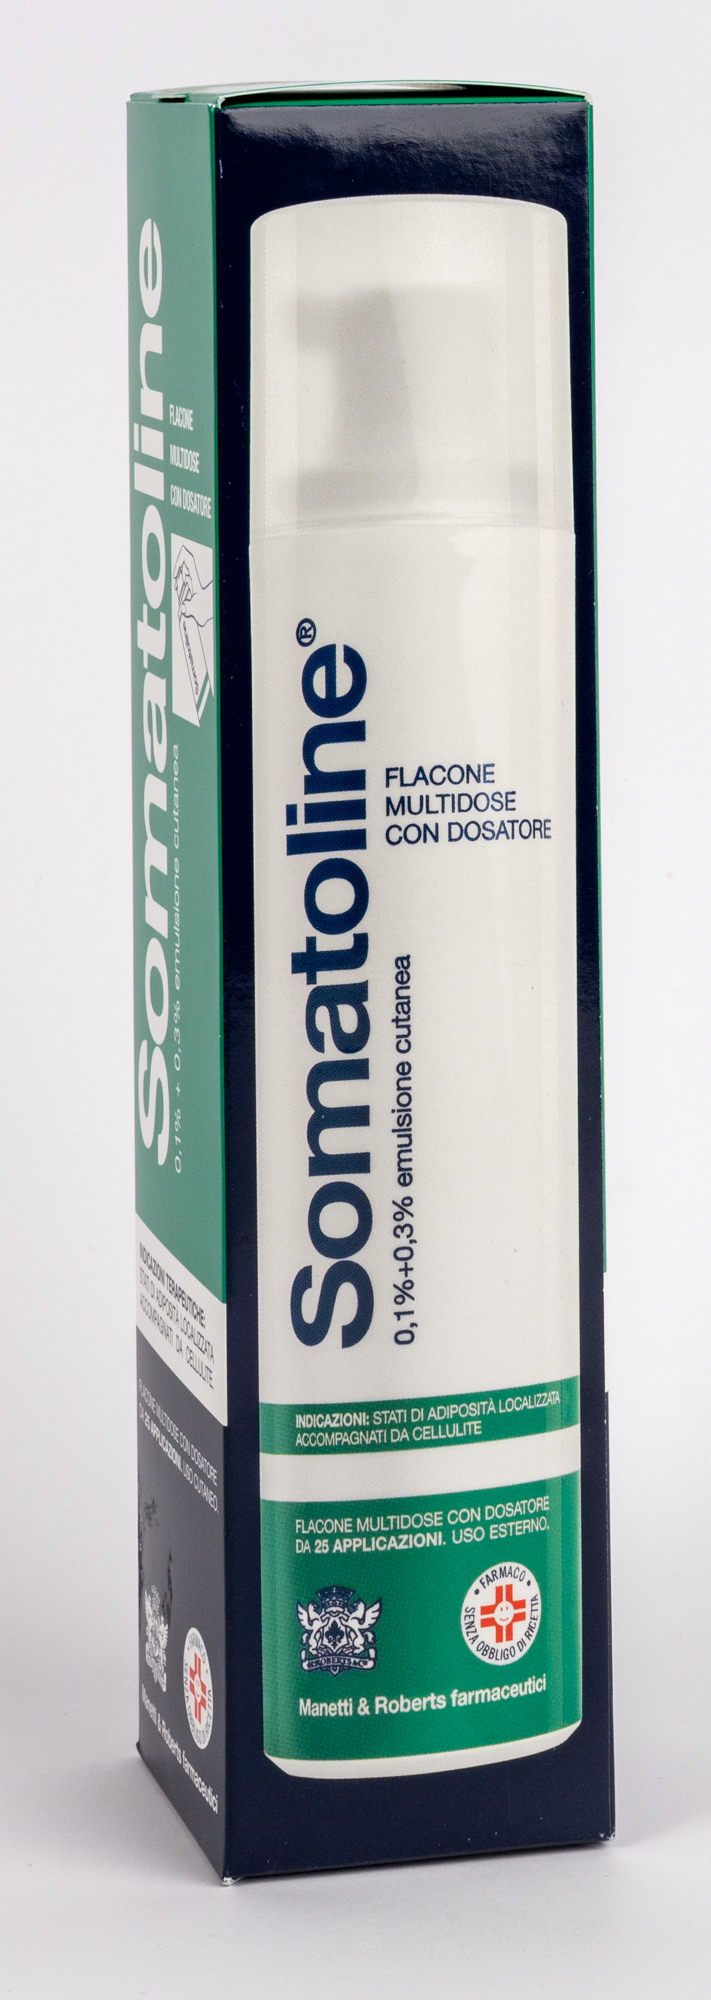 Somatoline Emulsione Cutanea flacone da 25 applicazioni